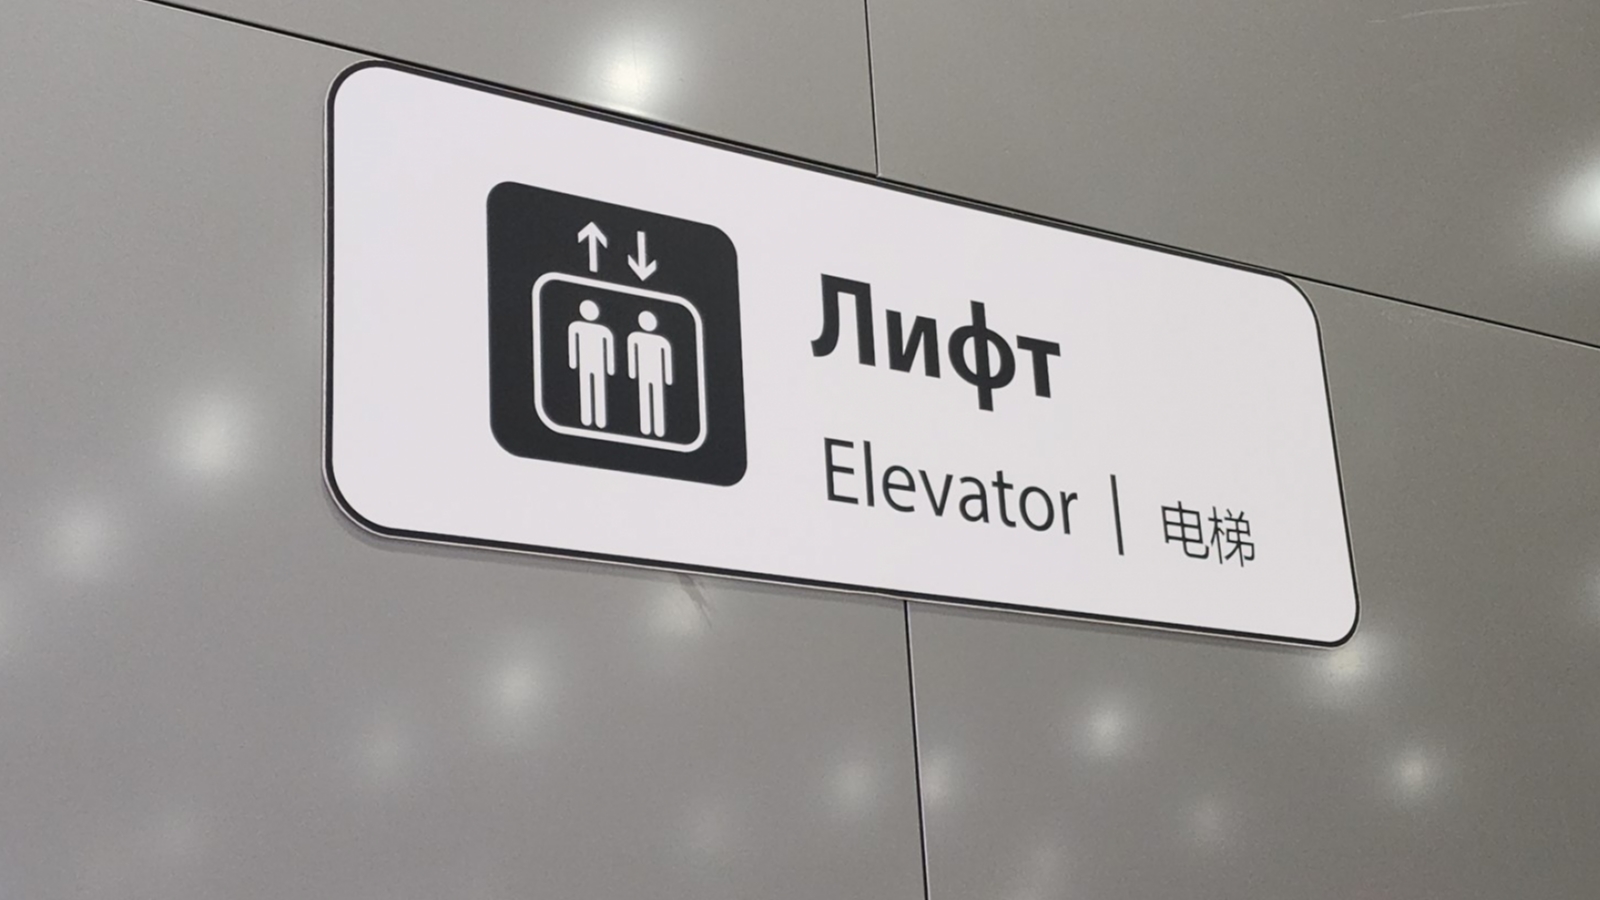 Управляшка об инциденте с лифтом: «Произошло резкое торможение»